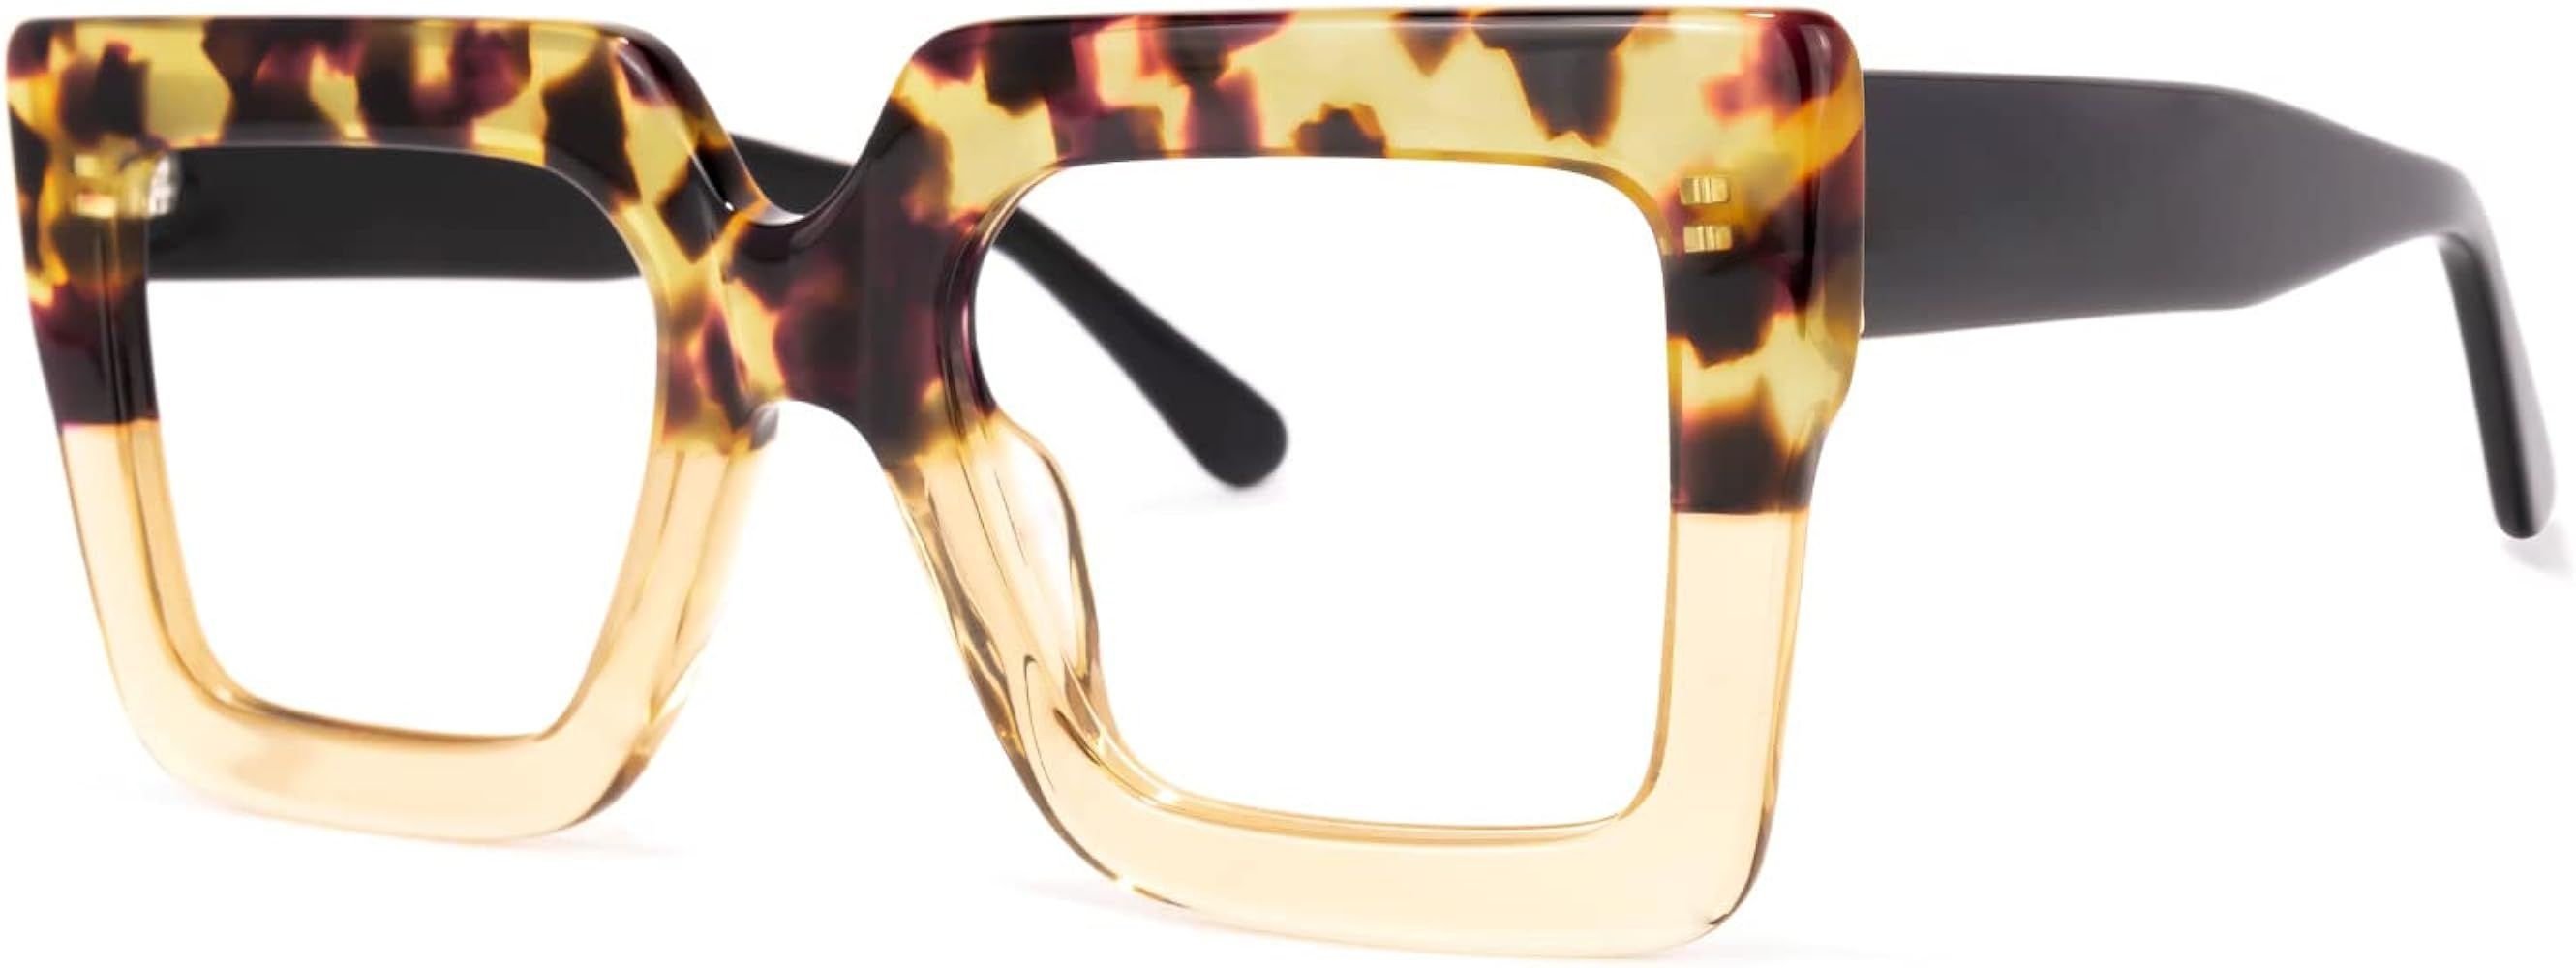 Zeelool Stylish Thick Oversized Square Blue Light Blocking Glasses for Women 100% UV400 Protection B | Amazon (US)